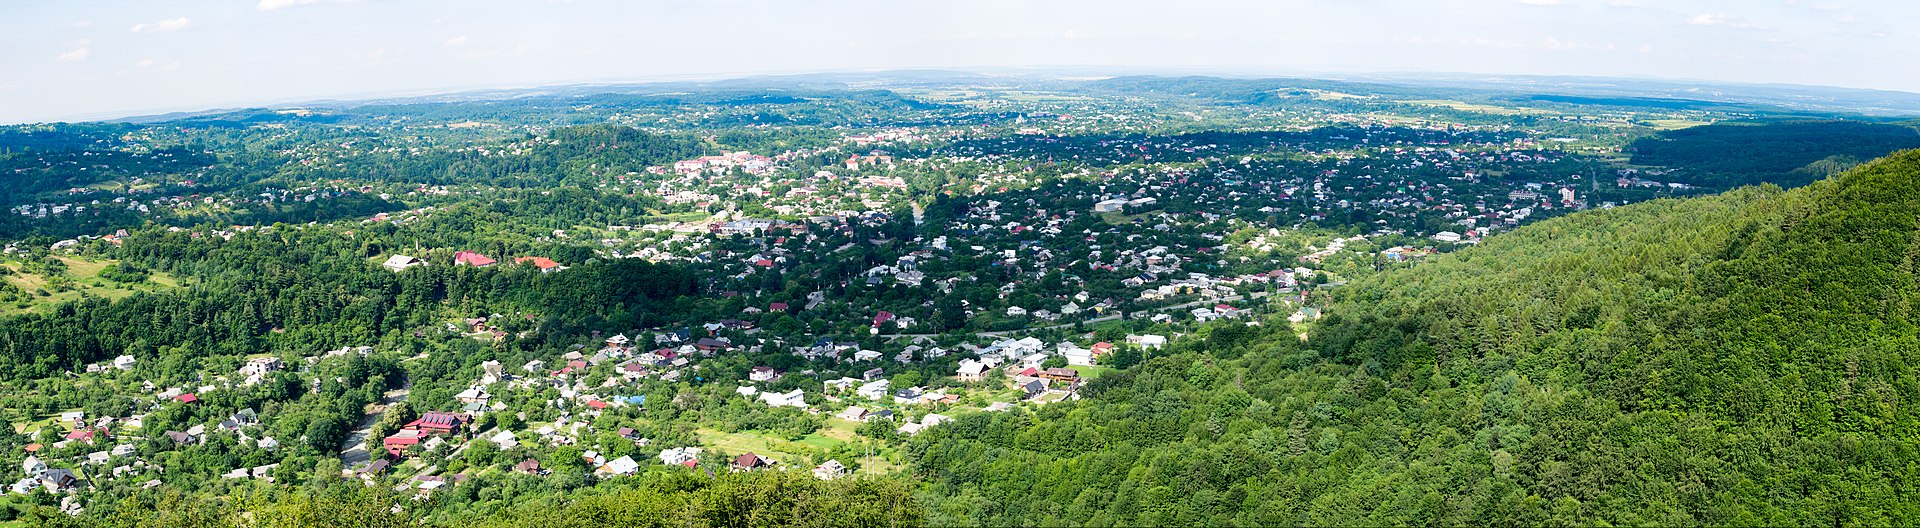 Панорамний вид міста Косів з оглядового майданчика на горі Острий висотою 584 м